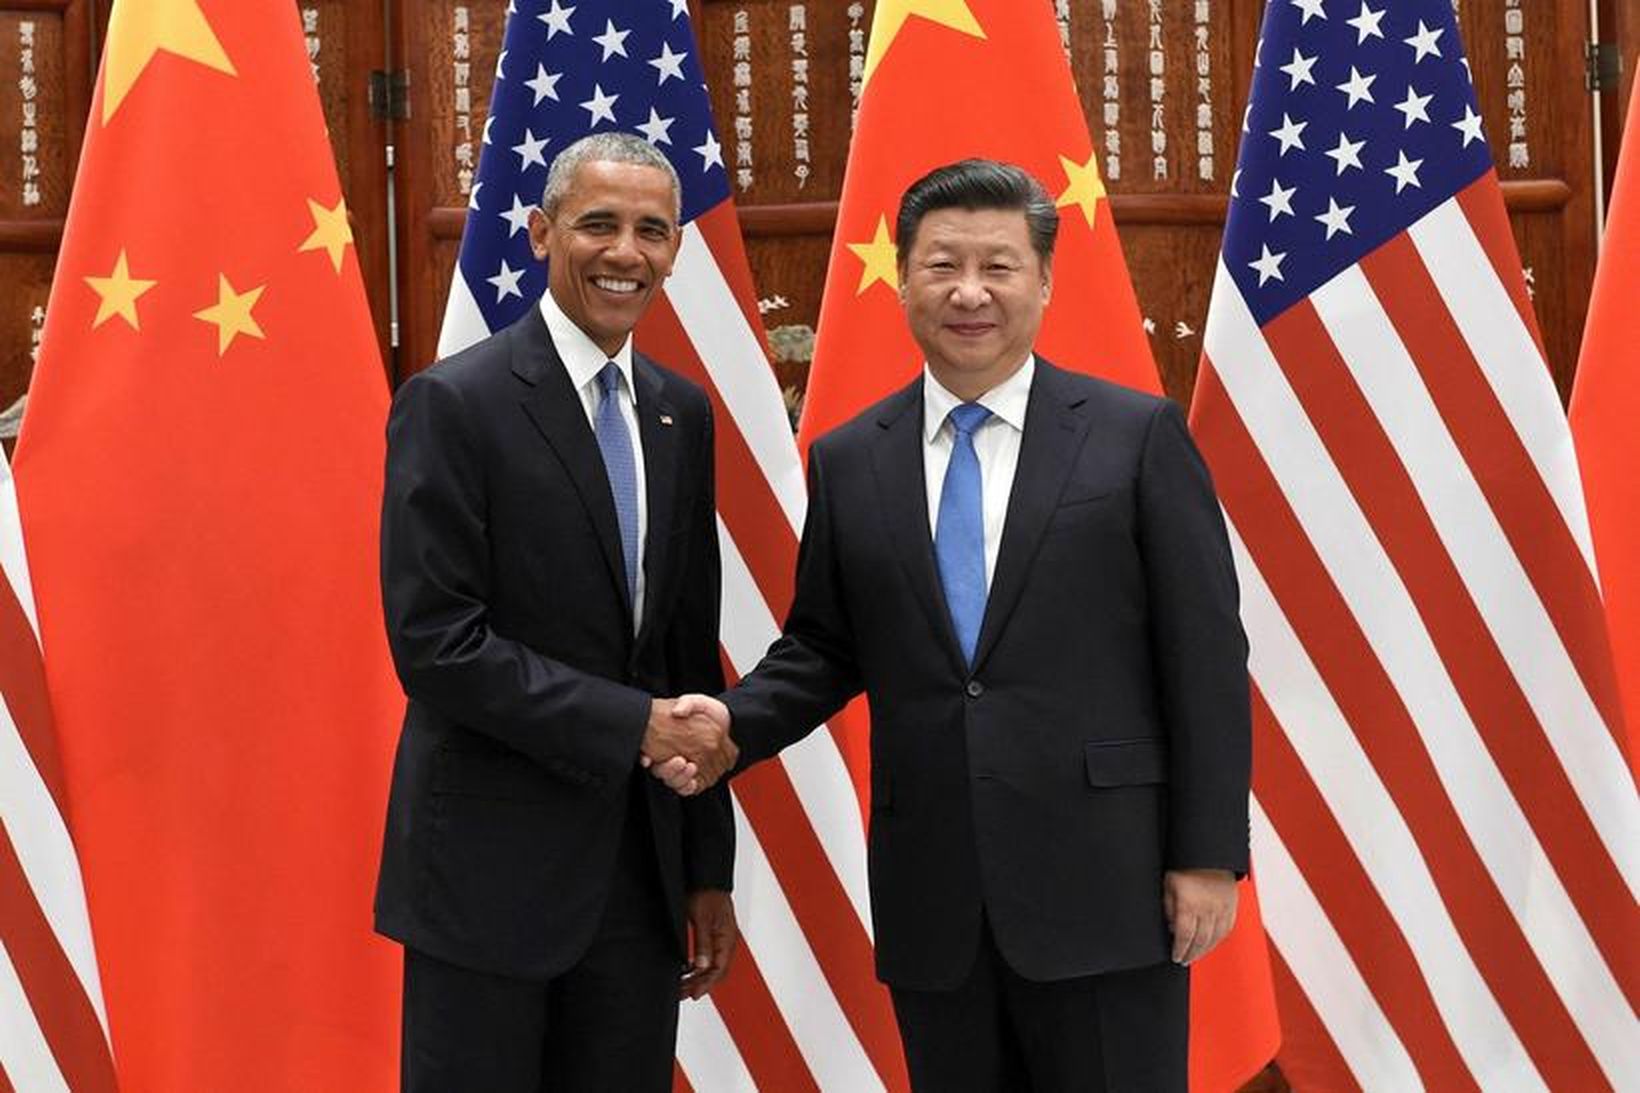 Forseti Kína Xi Jinping ásamt bandarískum starfsbróður sínum, Barack Obama.